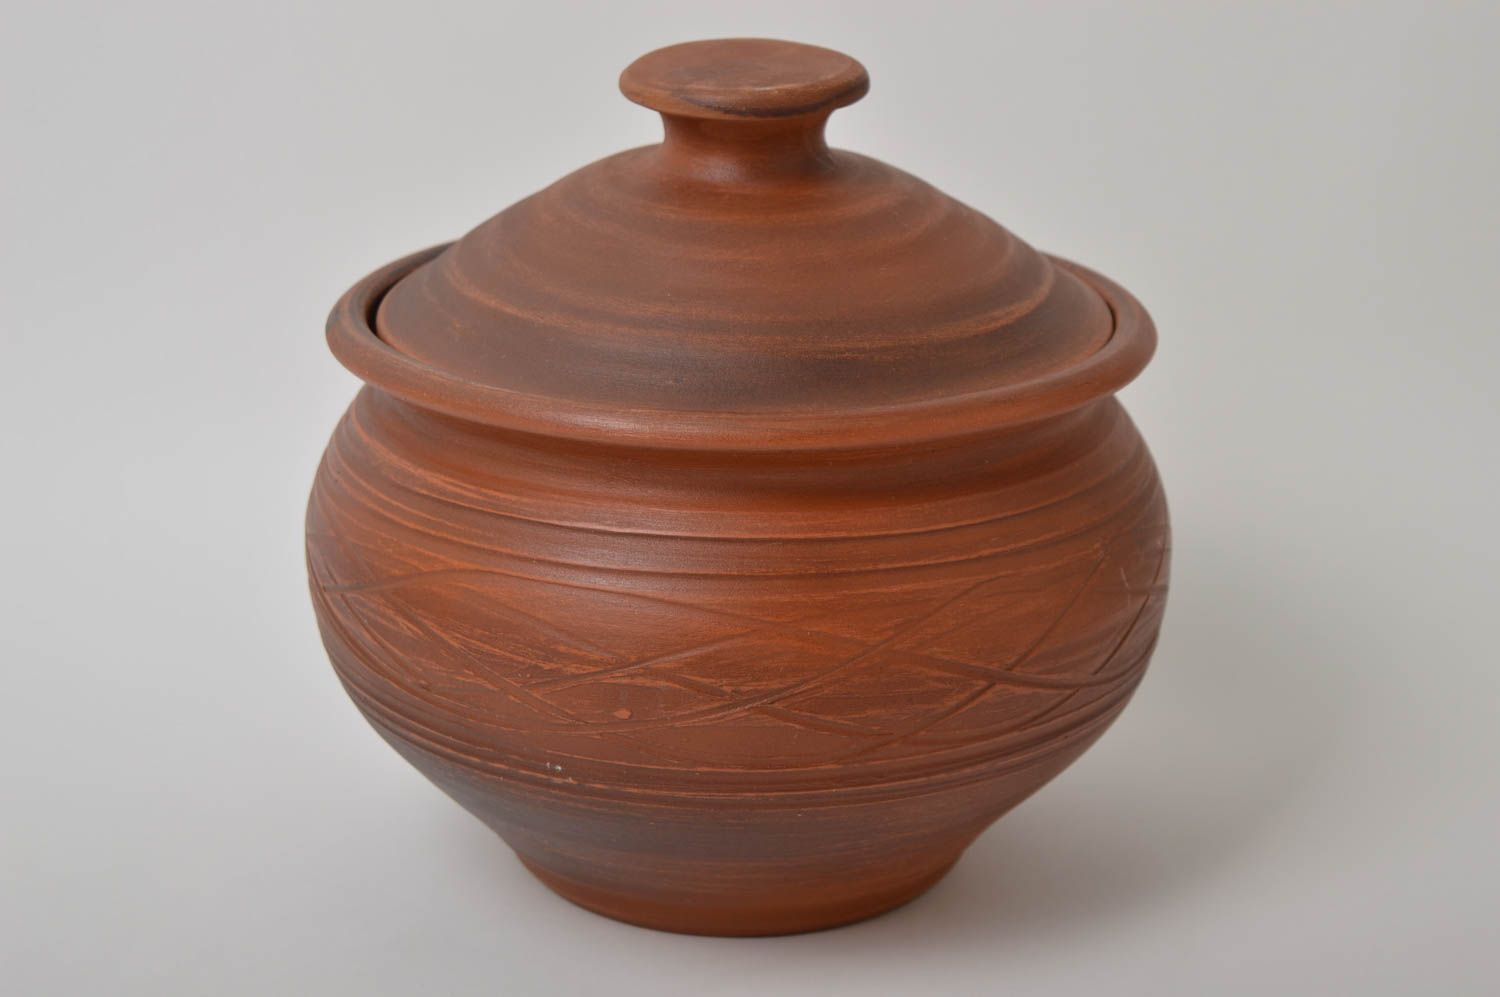 Topf aus Ton handmade Deko für Küche Keramik Geschirr im Öko Style schön foto 2